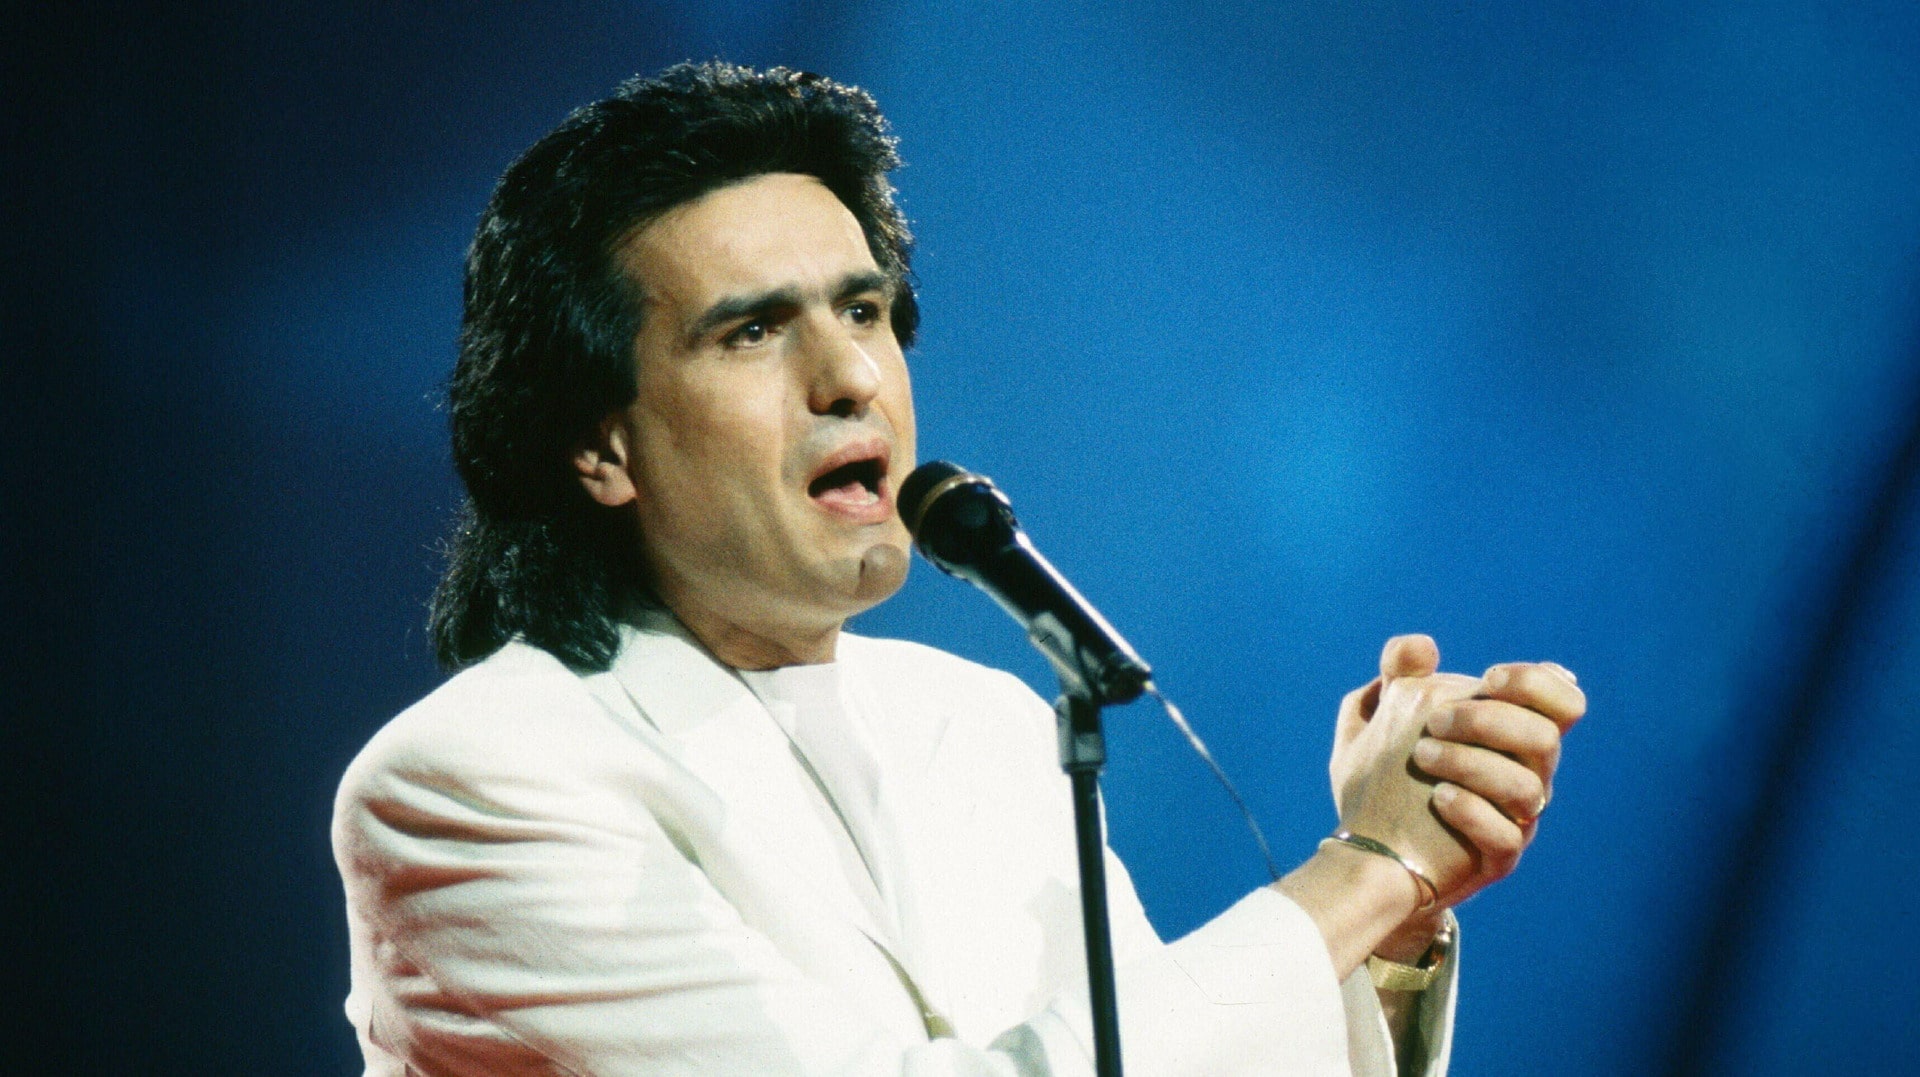 Toto Cutugno, az 1990-es zágrábi Eurovíziós Dalfesztivál olasz versenyzője és győztese a Insieme 1992 című dal előadásak közben